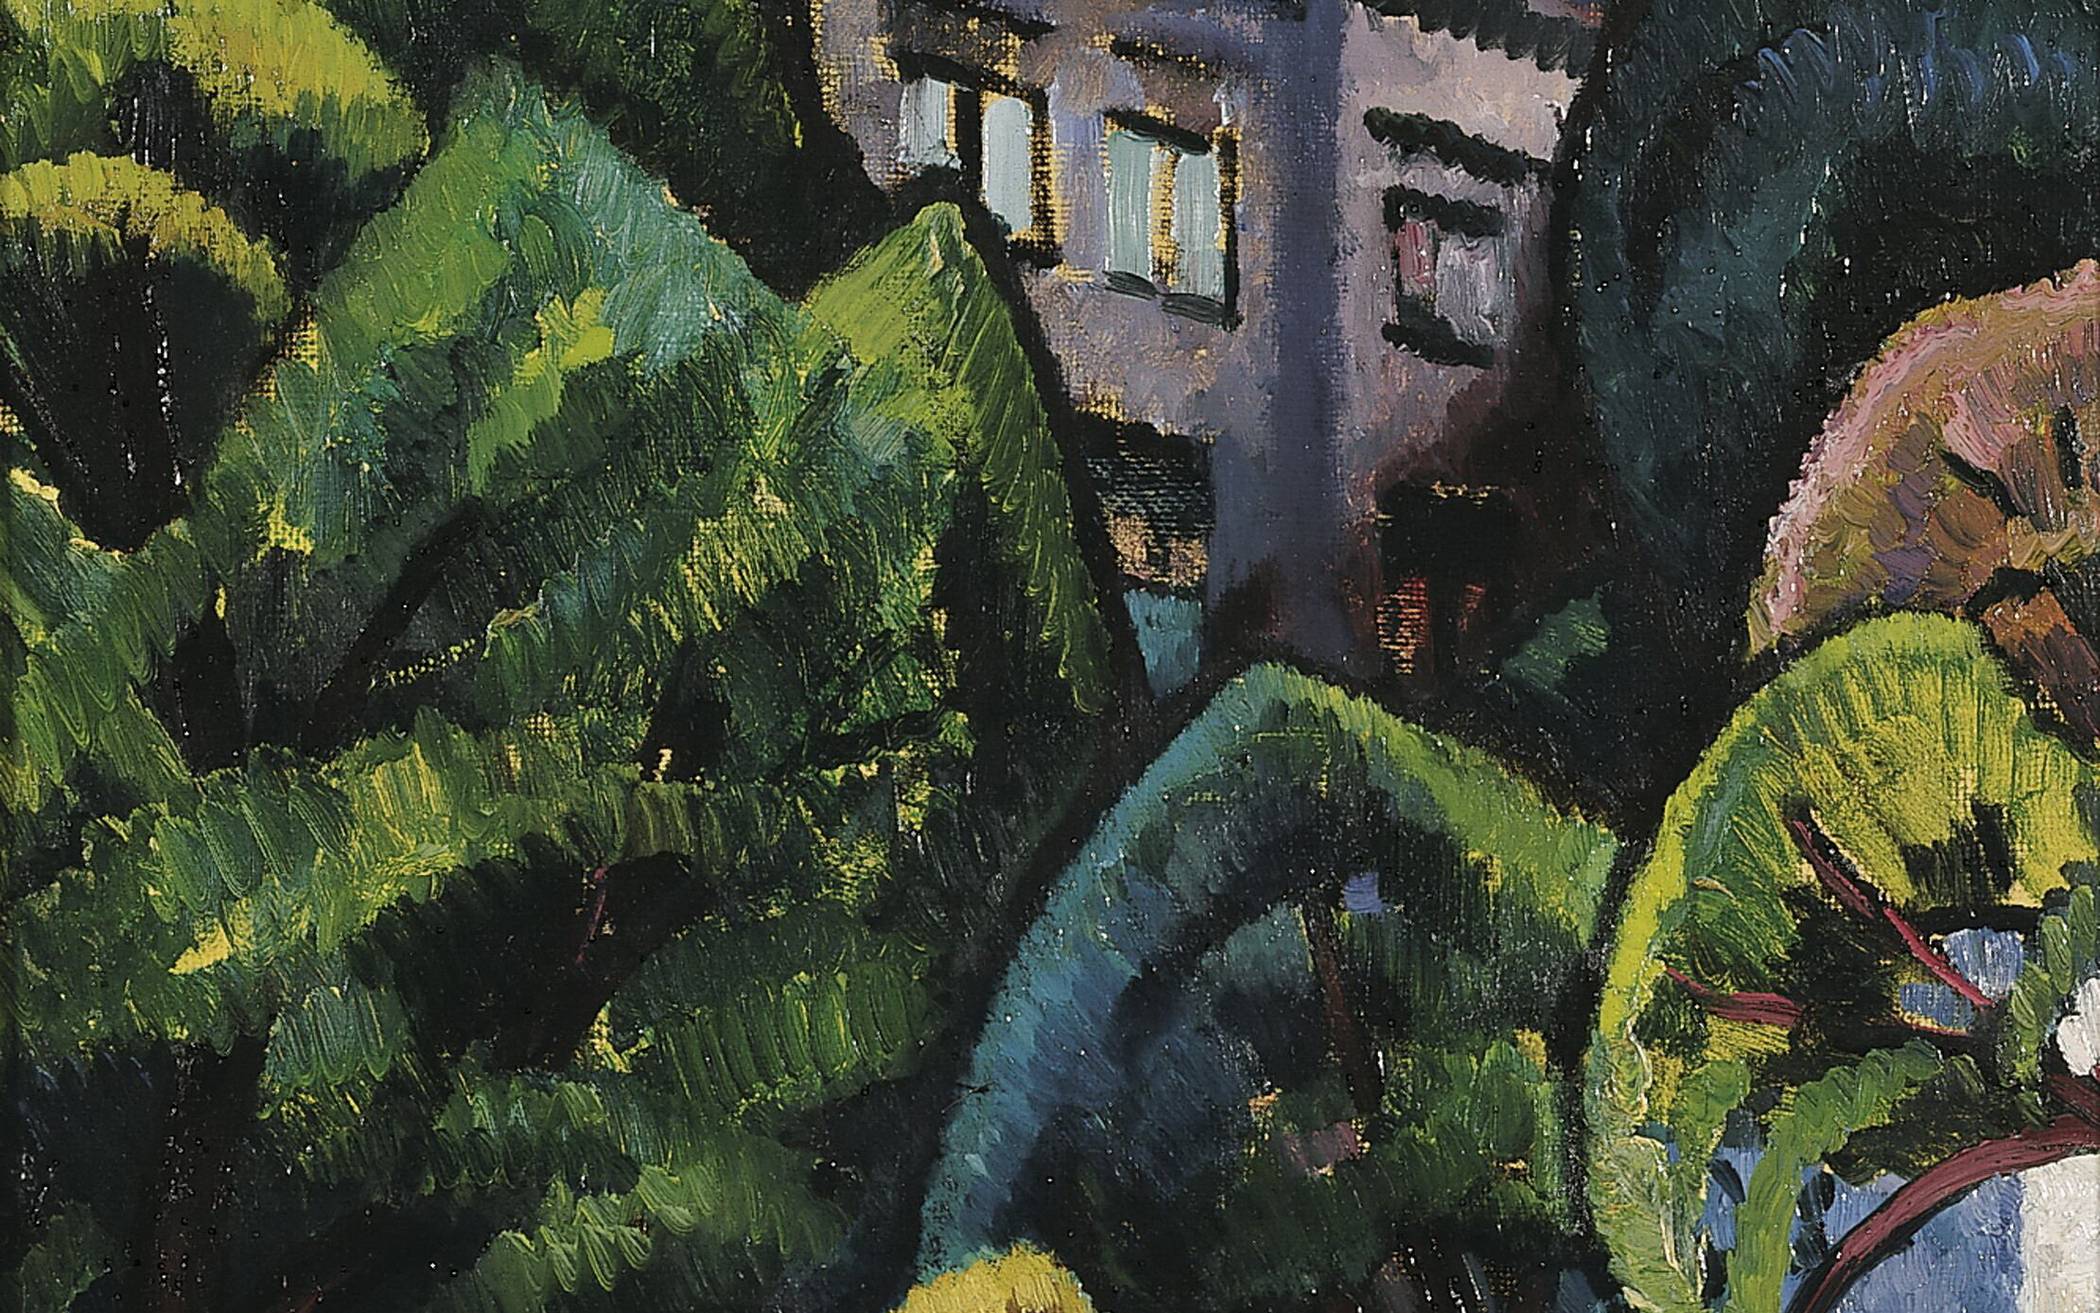  Adolf Erbslöhs Bild „Haus im Garten“ entstand im Jahr 1912. 